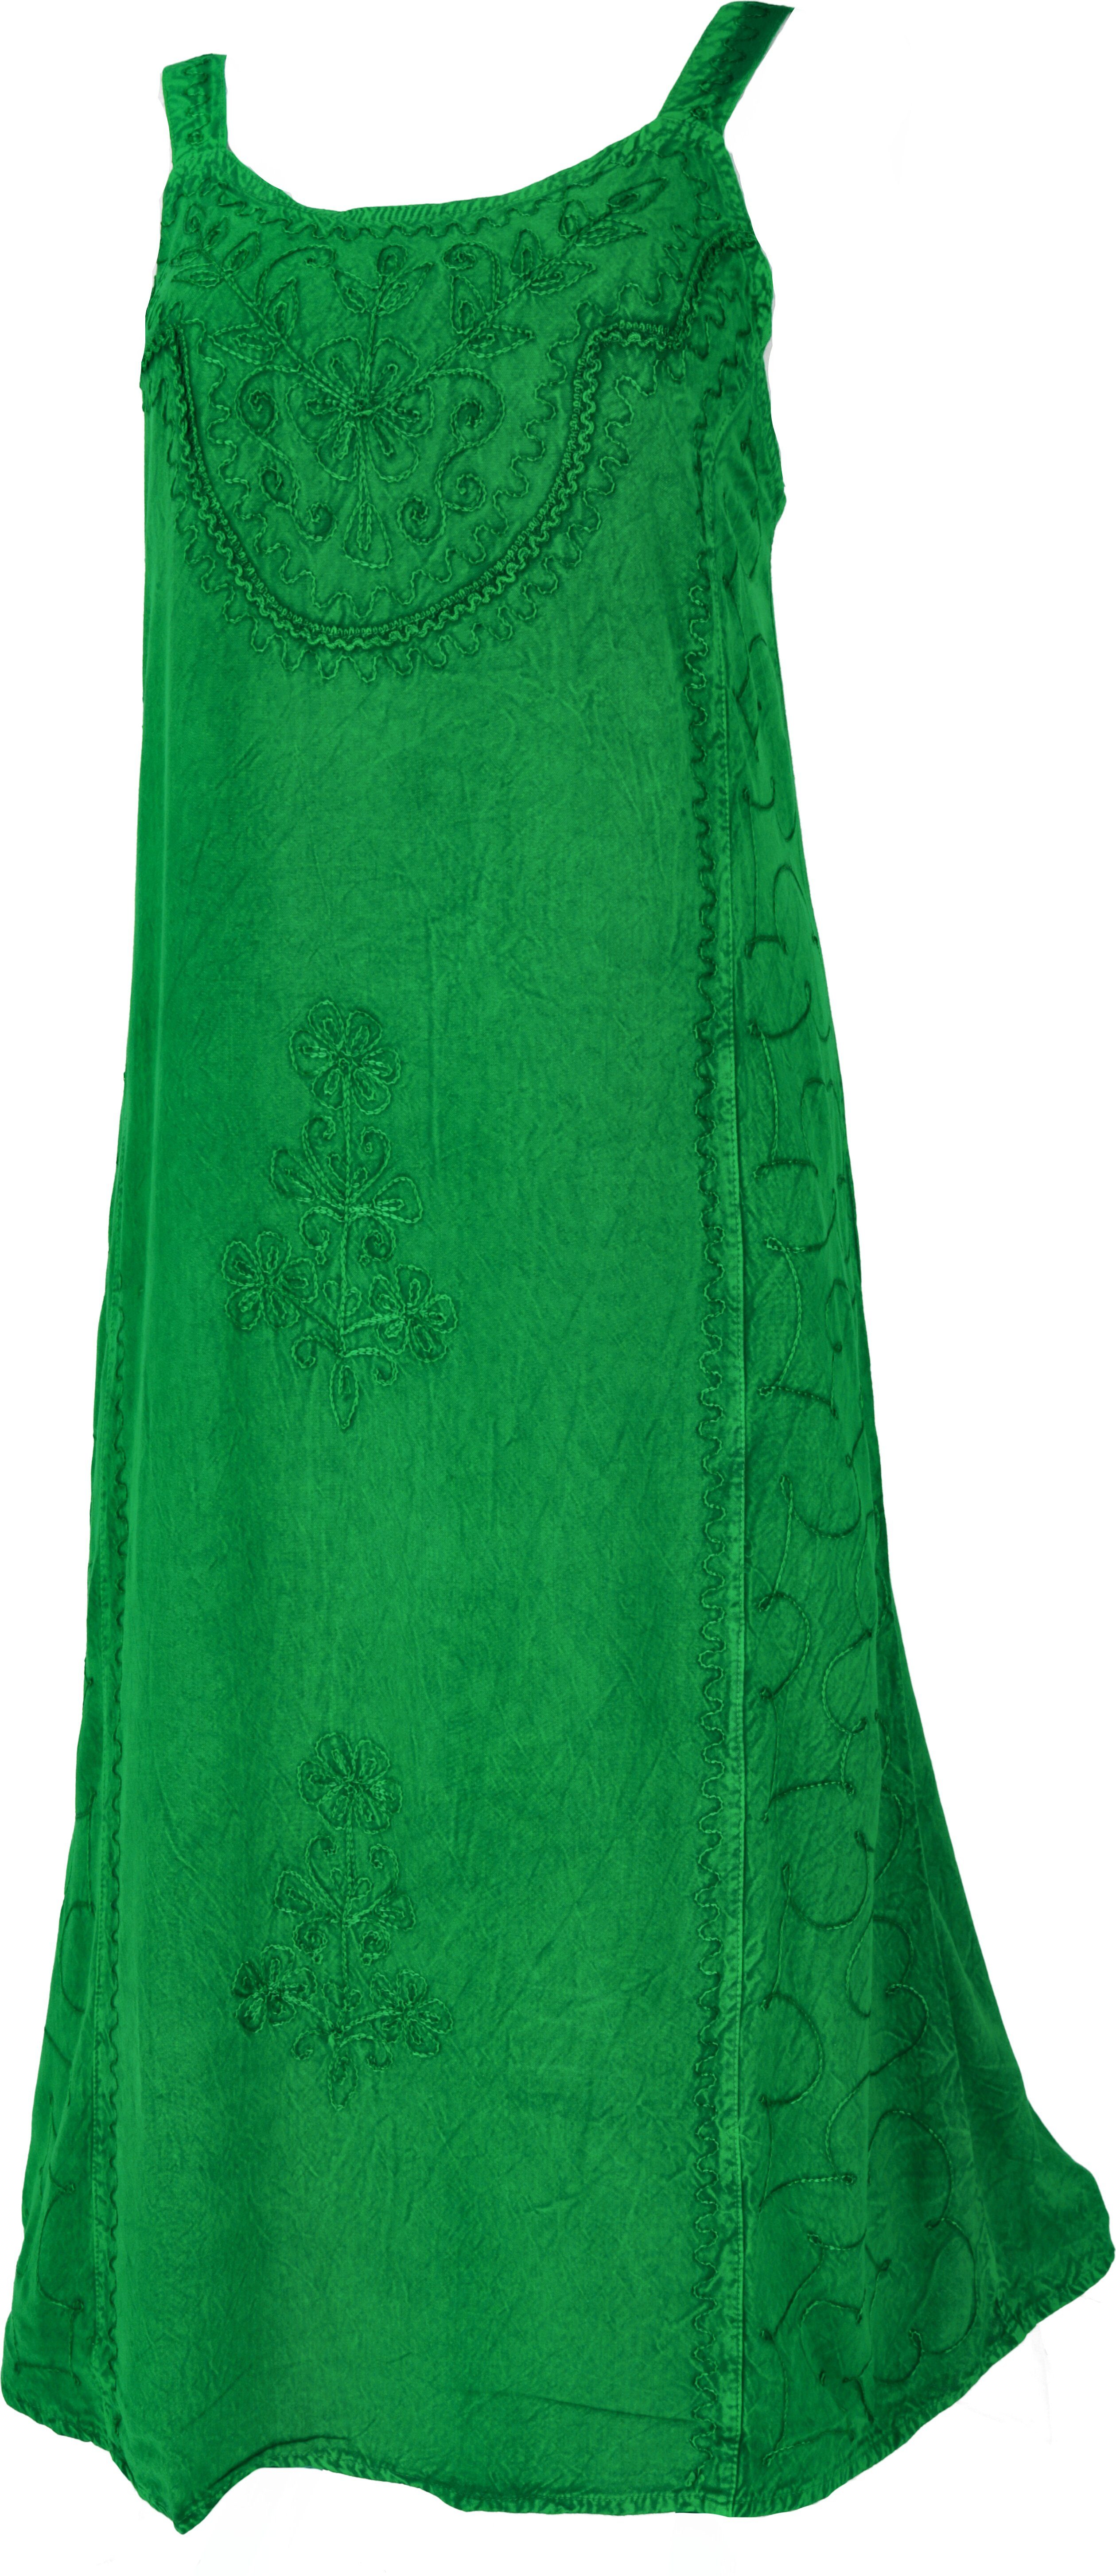 Guru-Shop Midikleid Besticktes indisches Sommerkleid Boho chic - grün alternative Bekleidung